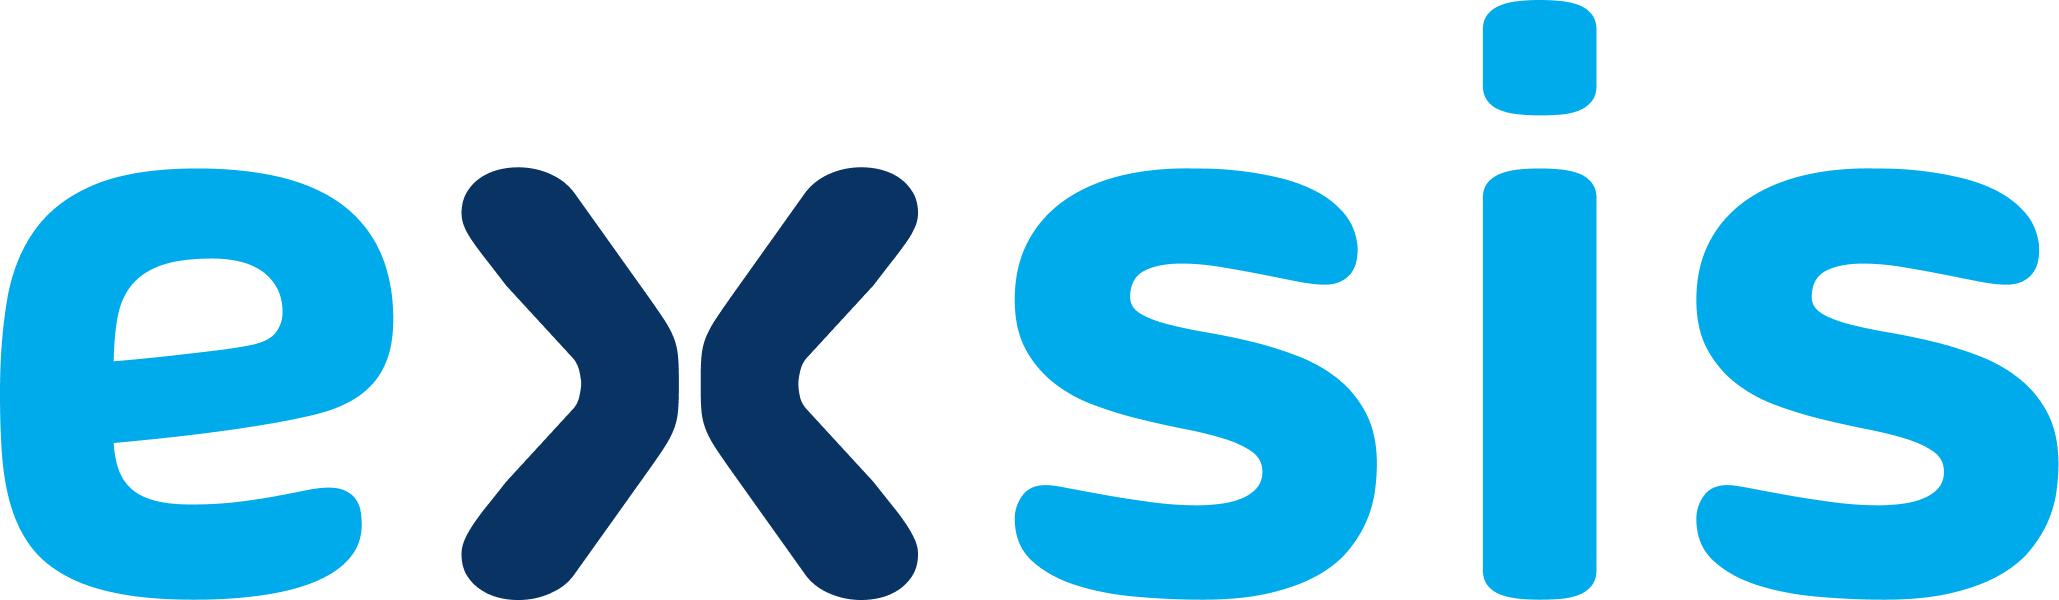 Exsis logo